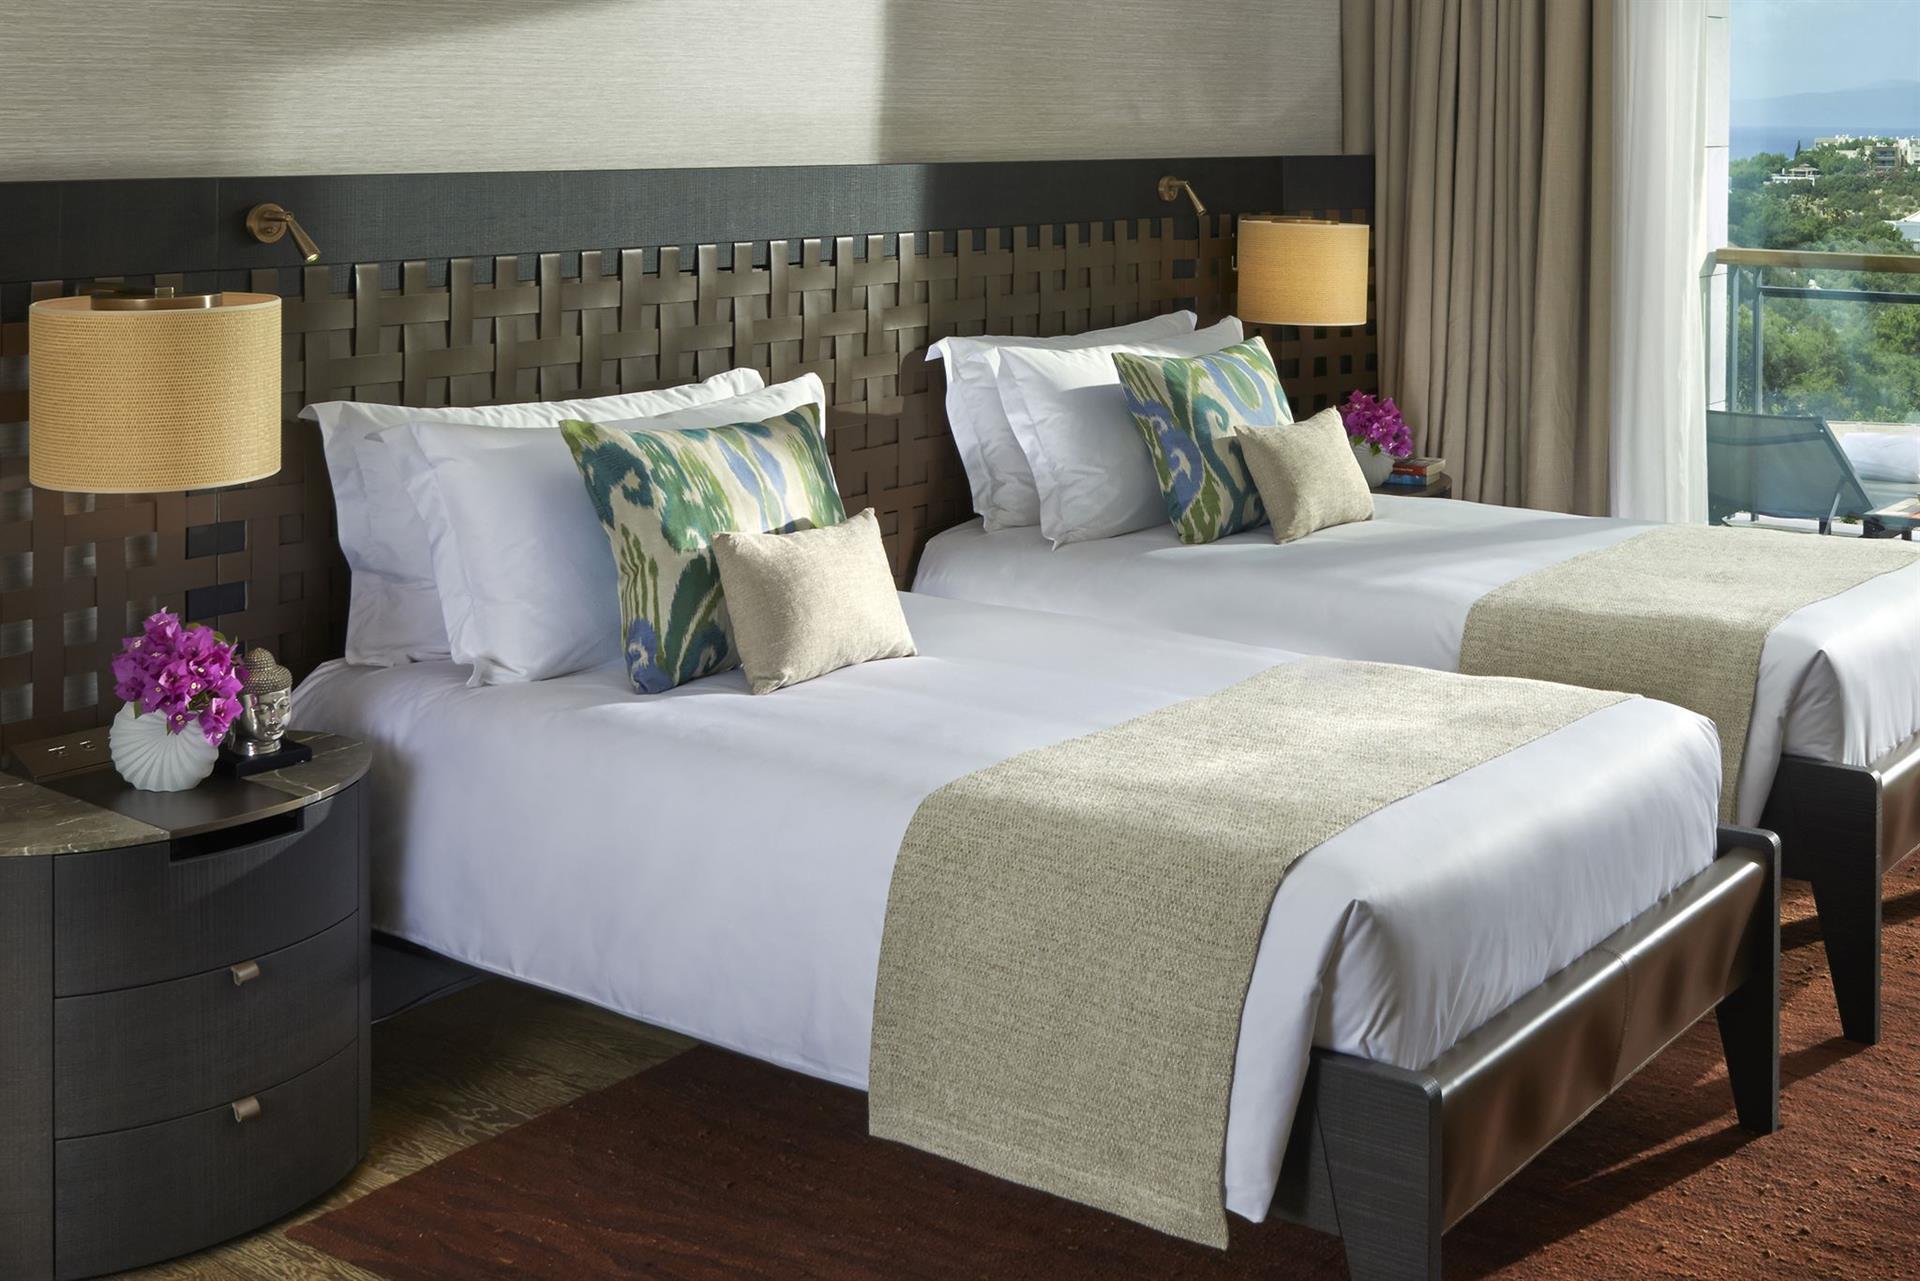 раздельные кровати в отеле